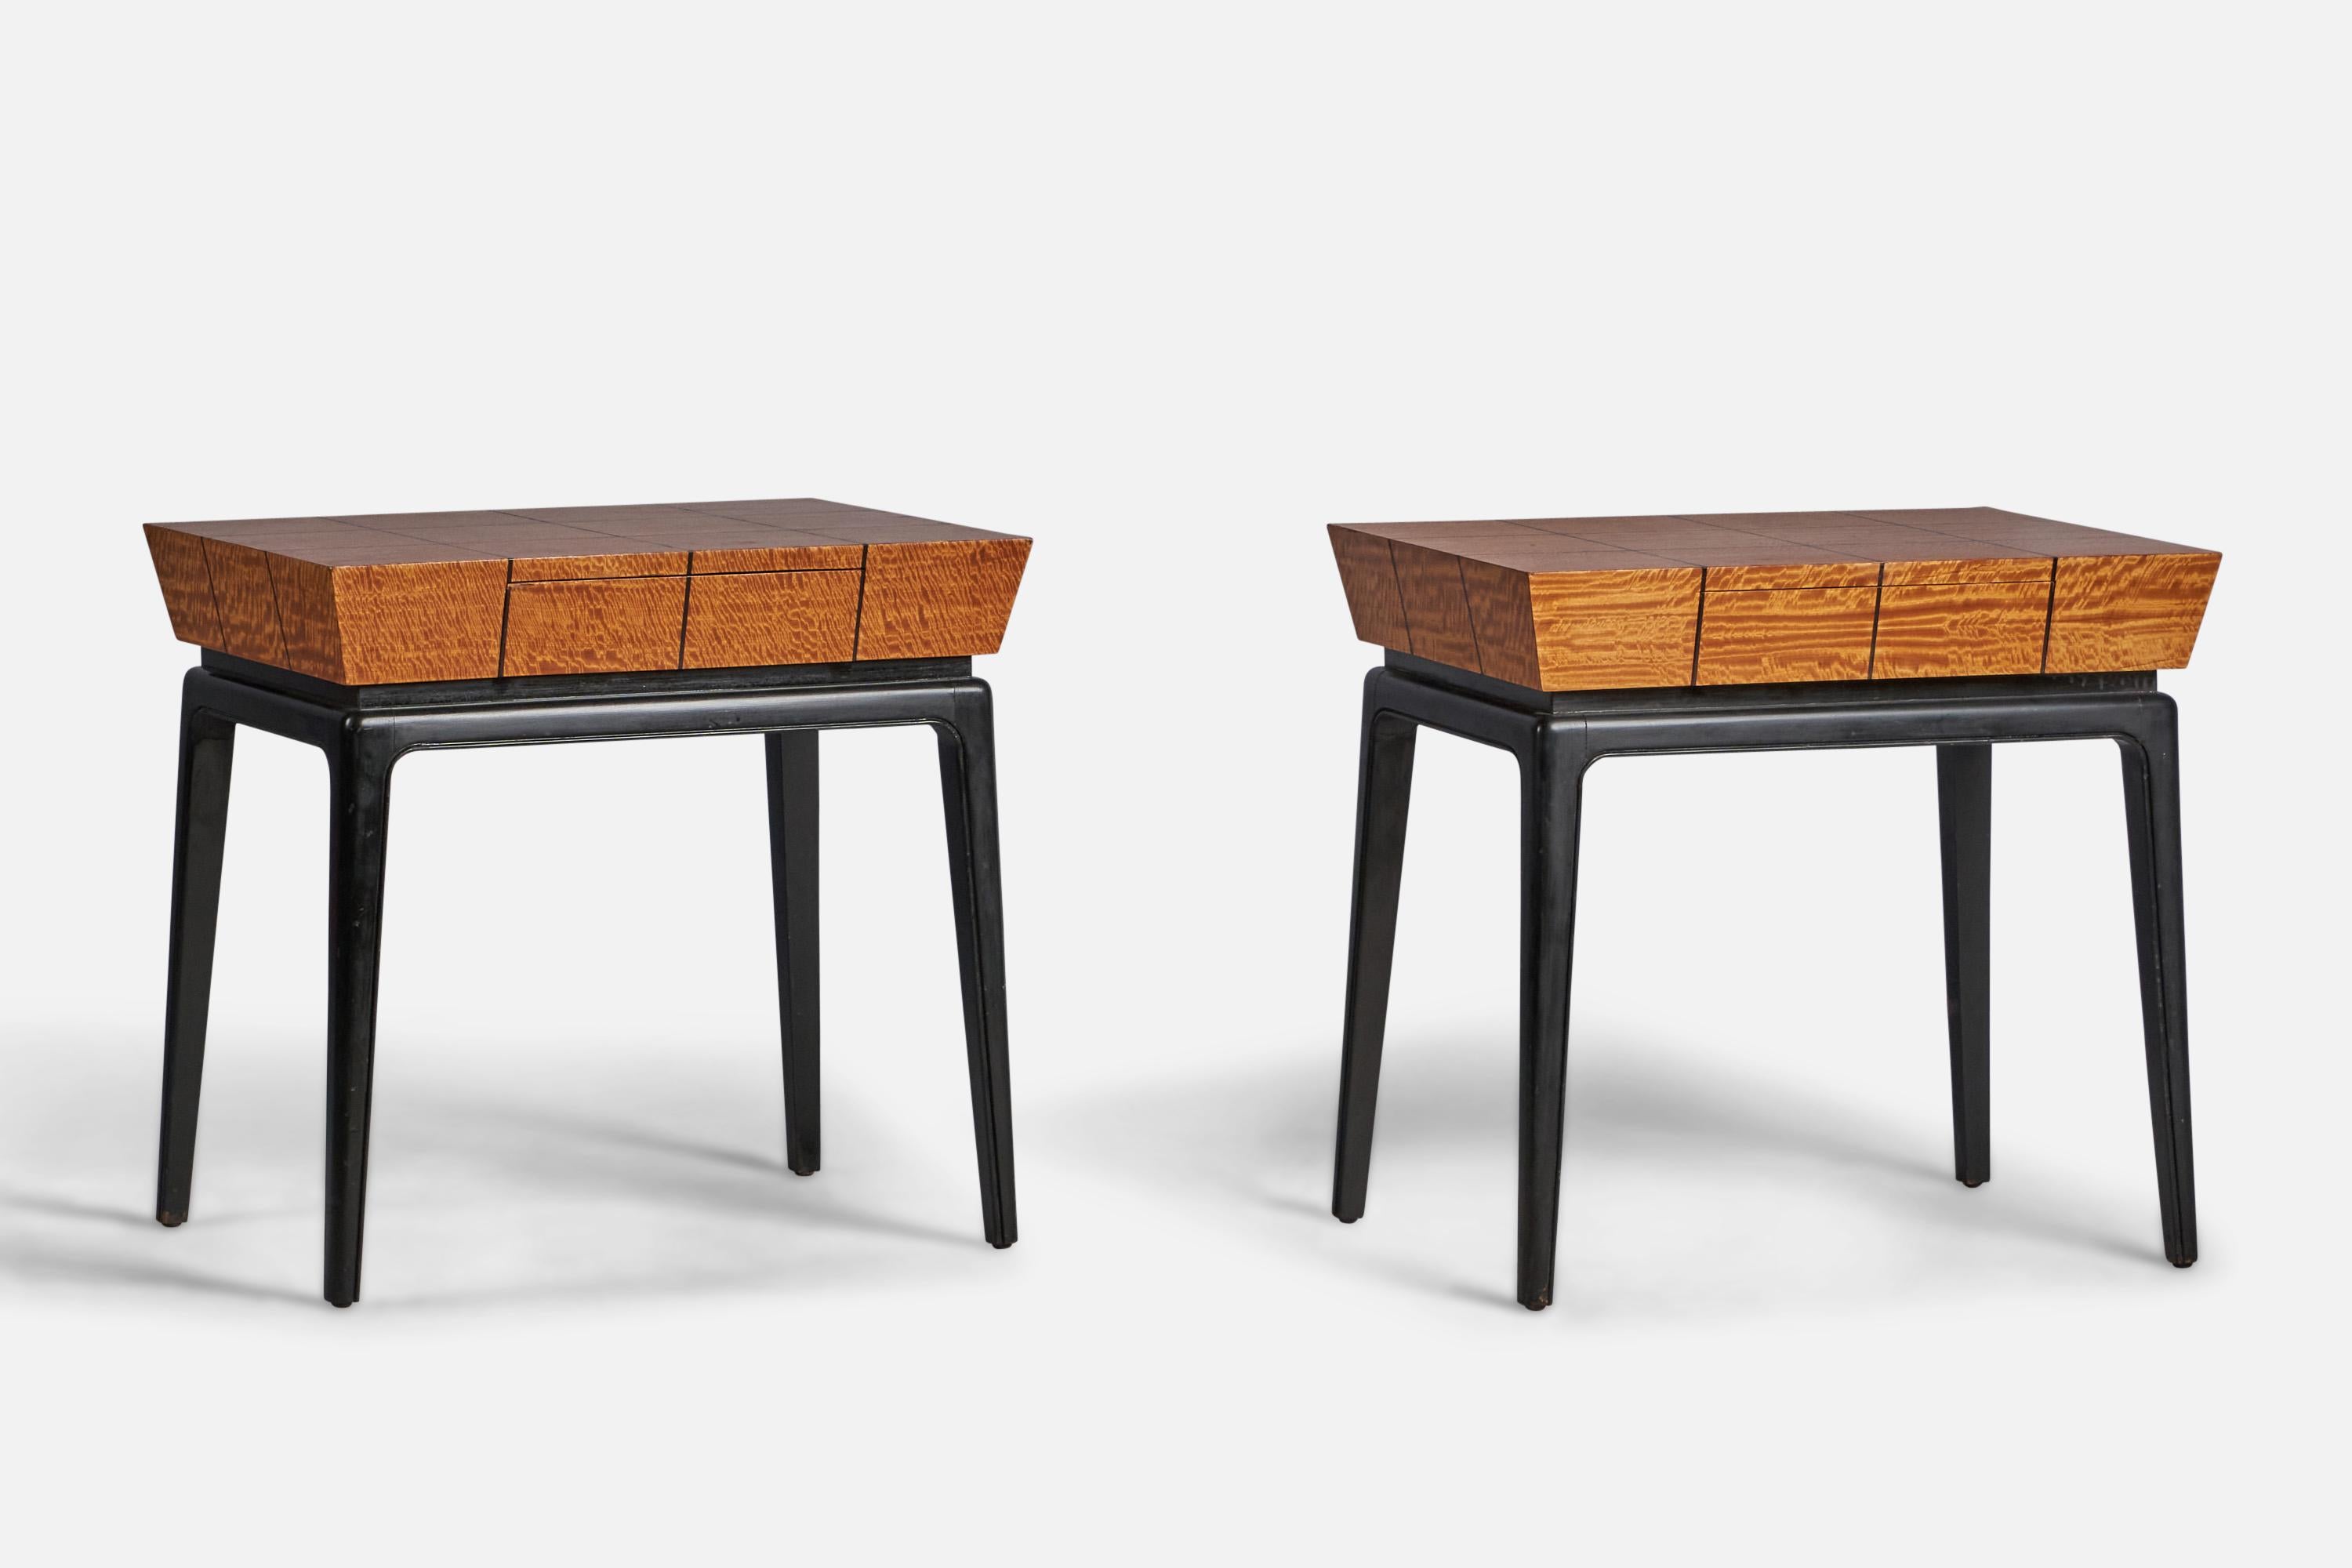 Paire de tables d'appoint à tiroirs ou de tables de nuit en bois et en bois laqué noir, conçues et produites aux États-Unis, années 1950.

